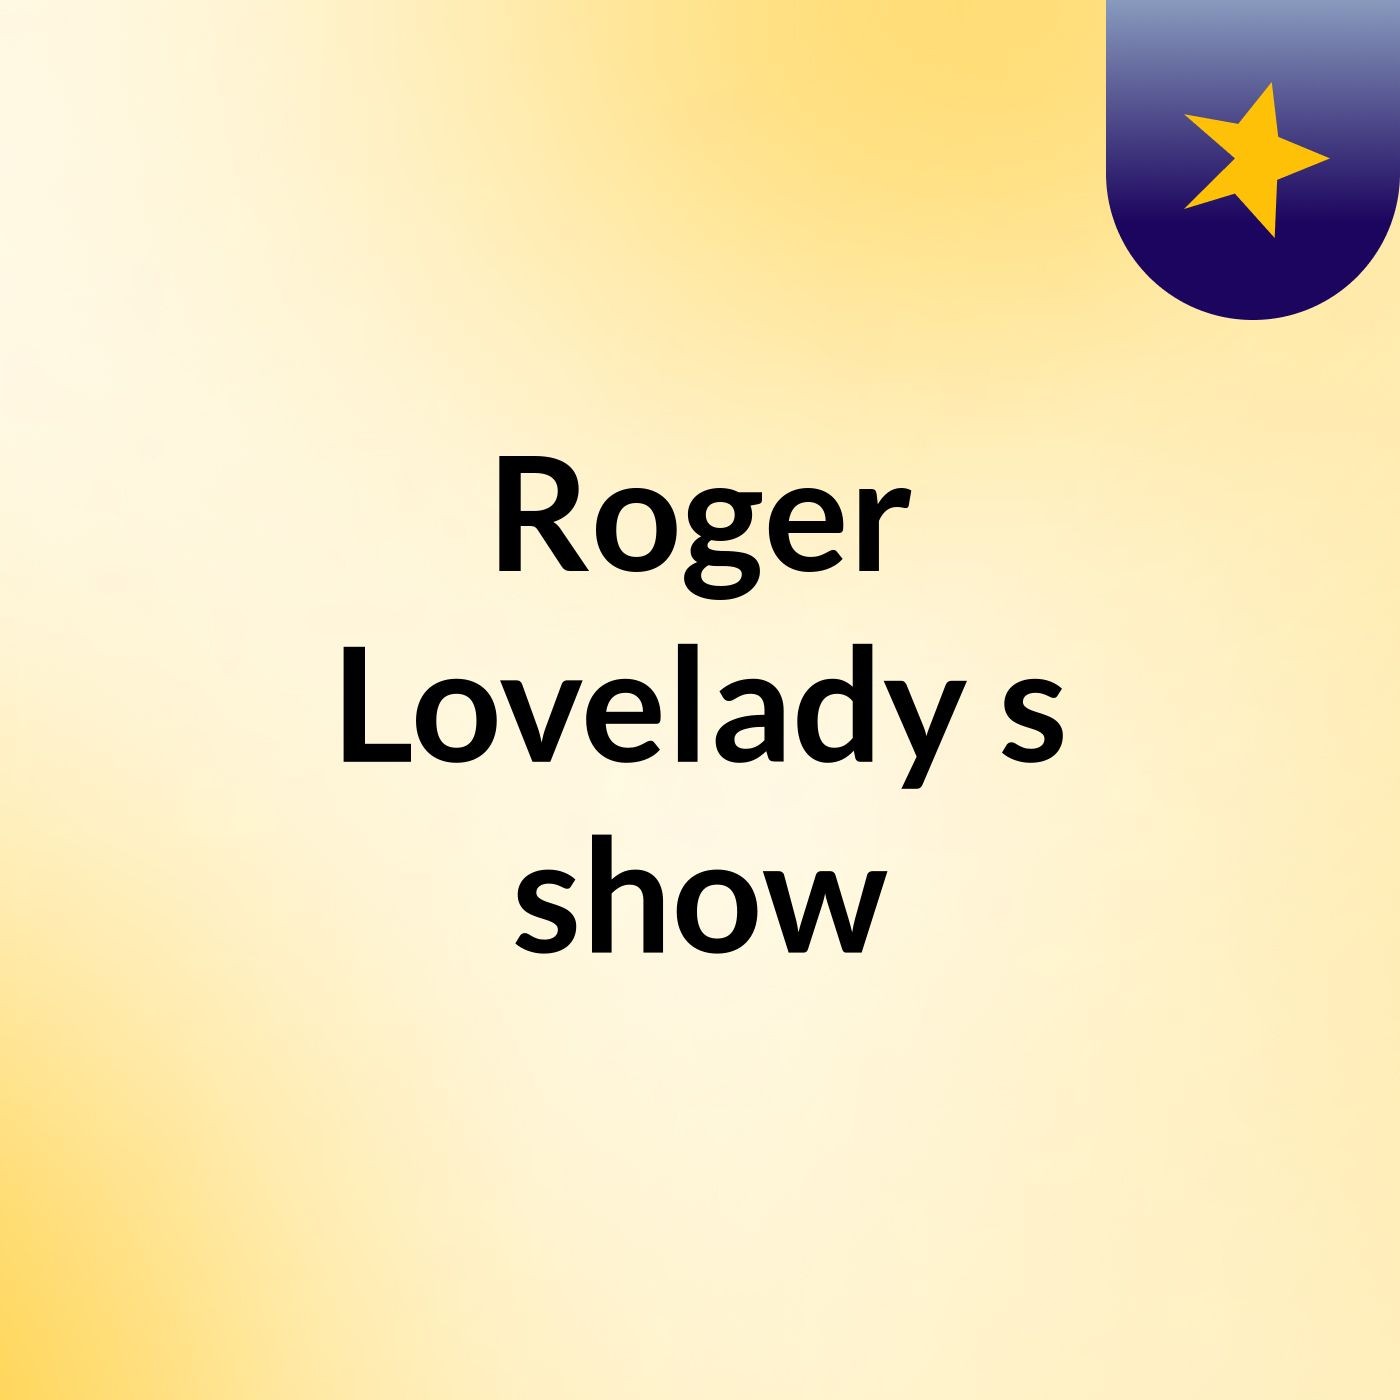 Roger Lovelady's show